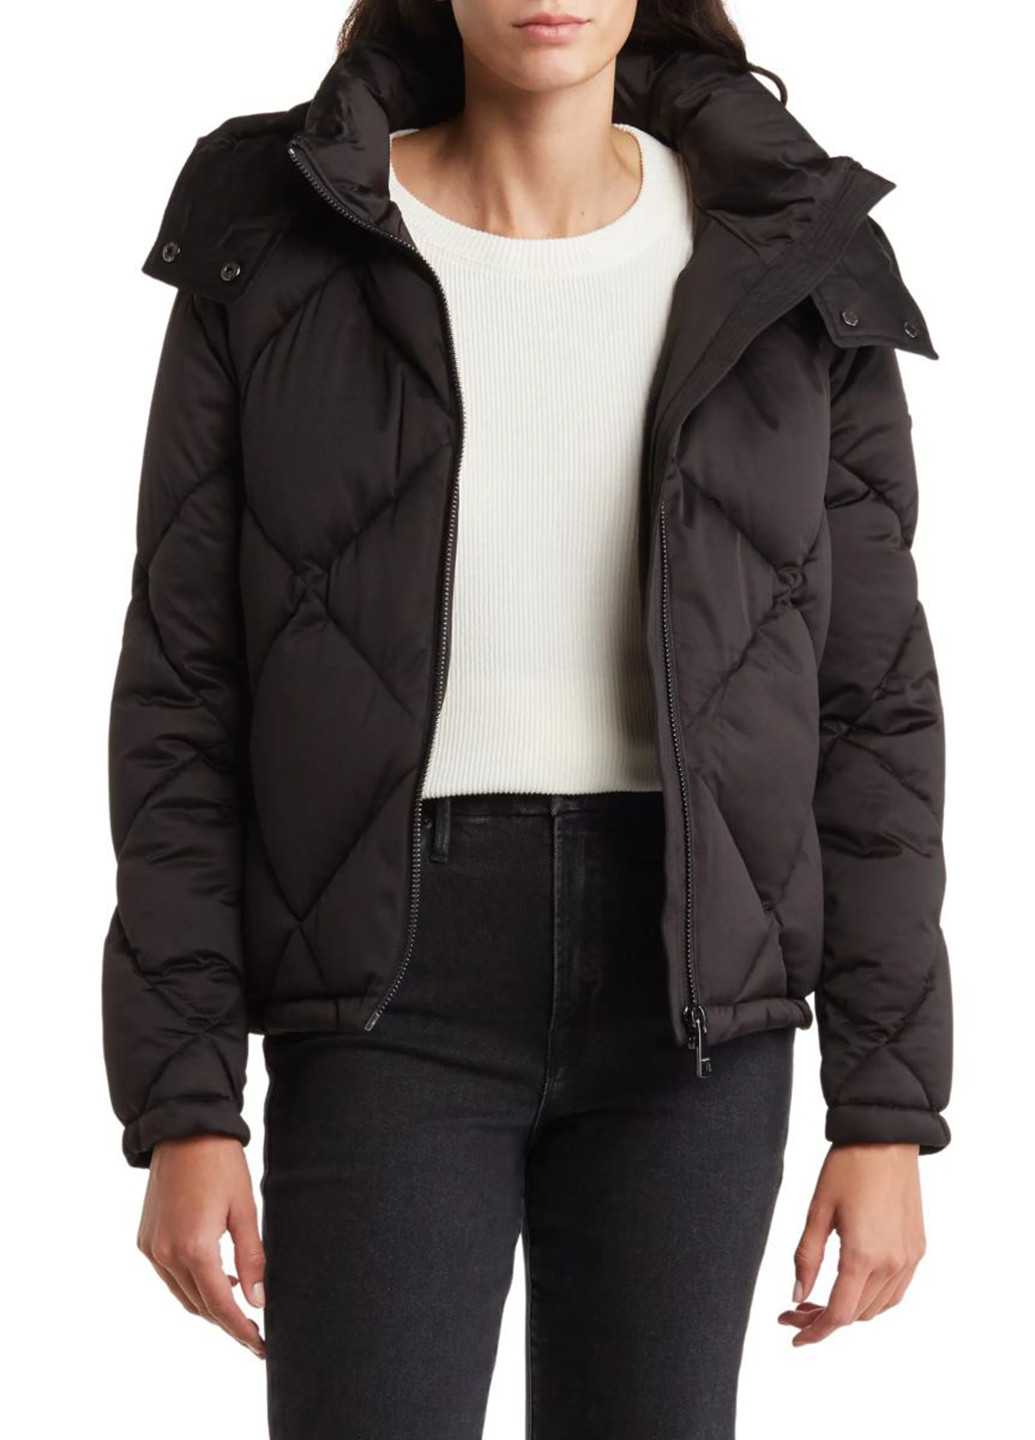 Черная демисезонная куртка куртка-одеяло Calvin Klein